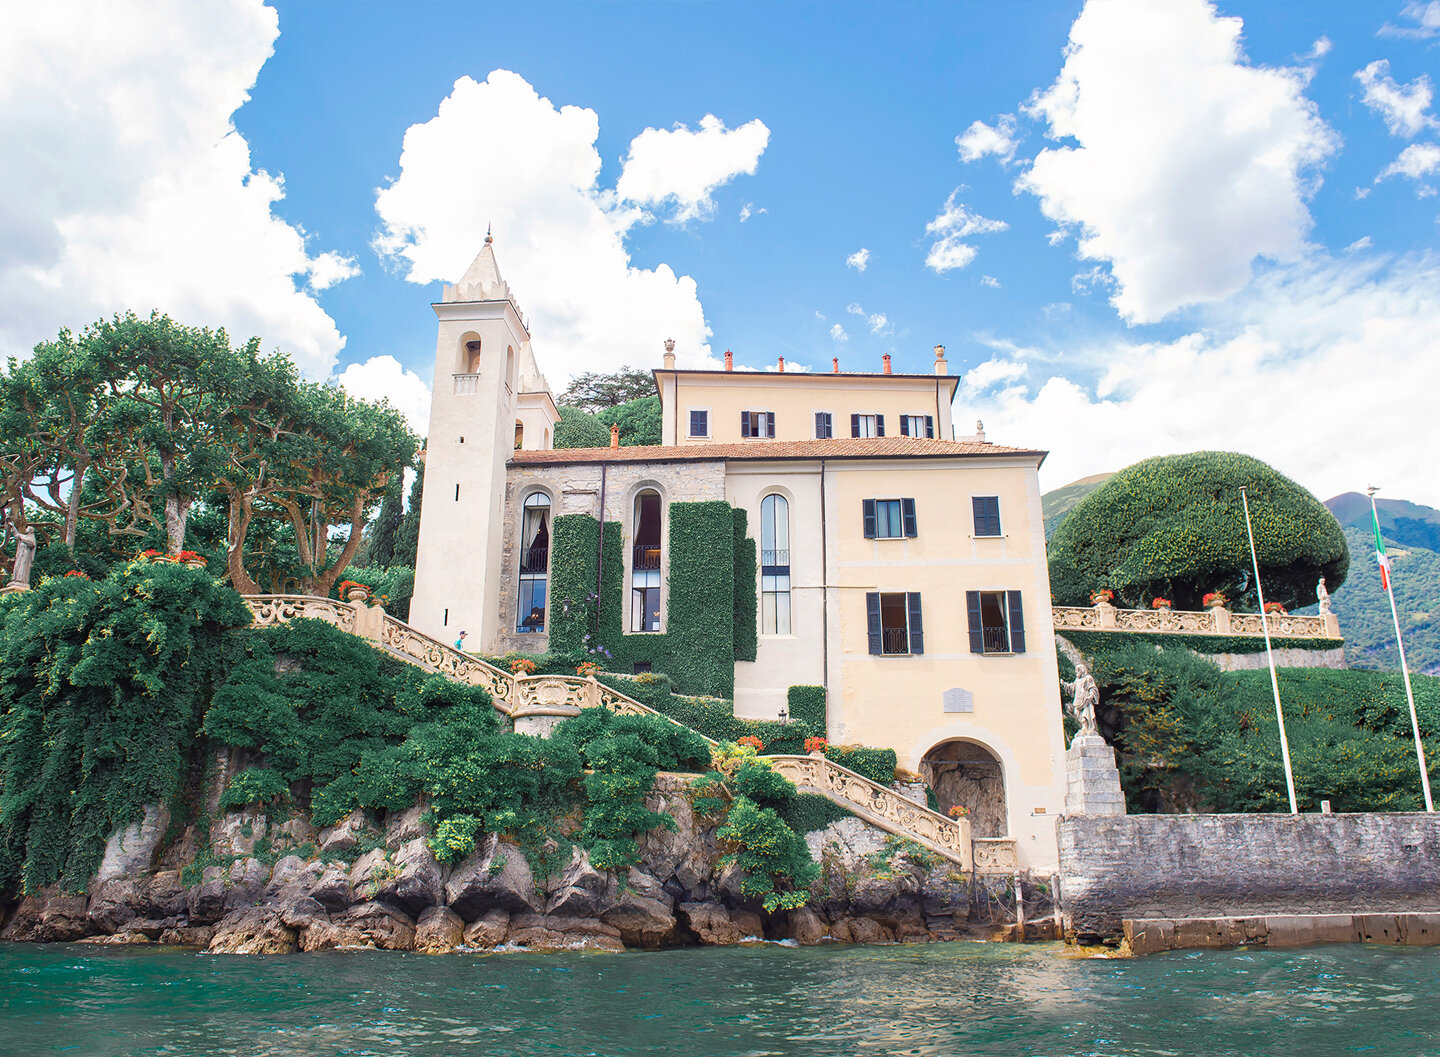 A view of Villa del Balbianello from Lake Como